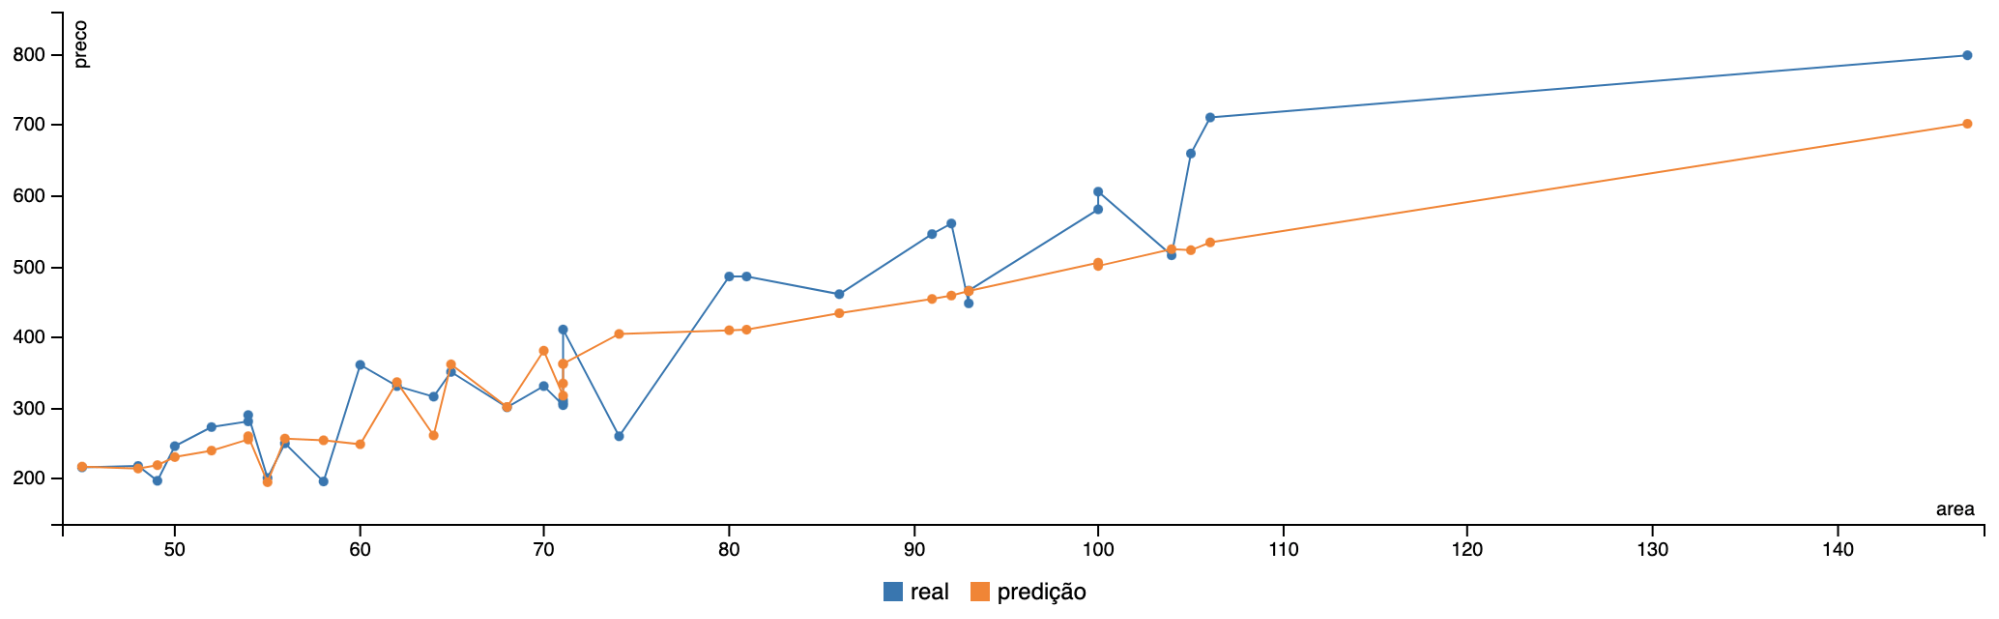 Comparação entre o valor real e o valor predito pelo modelo.